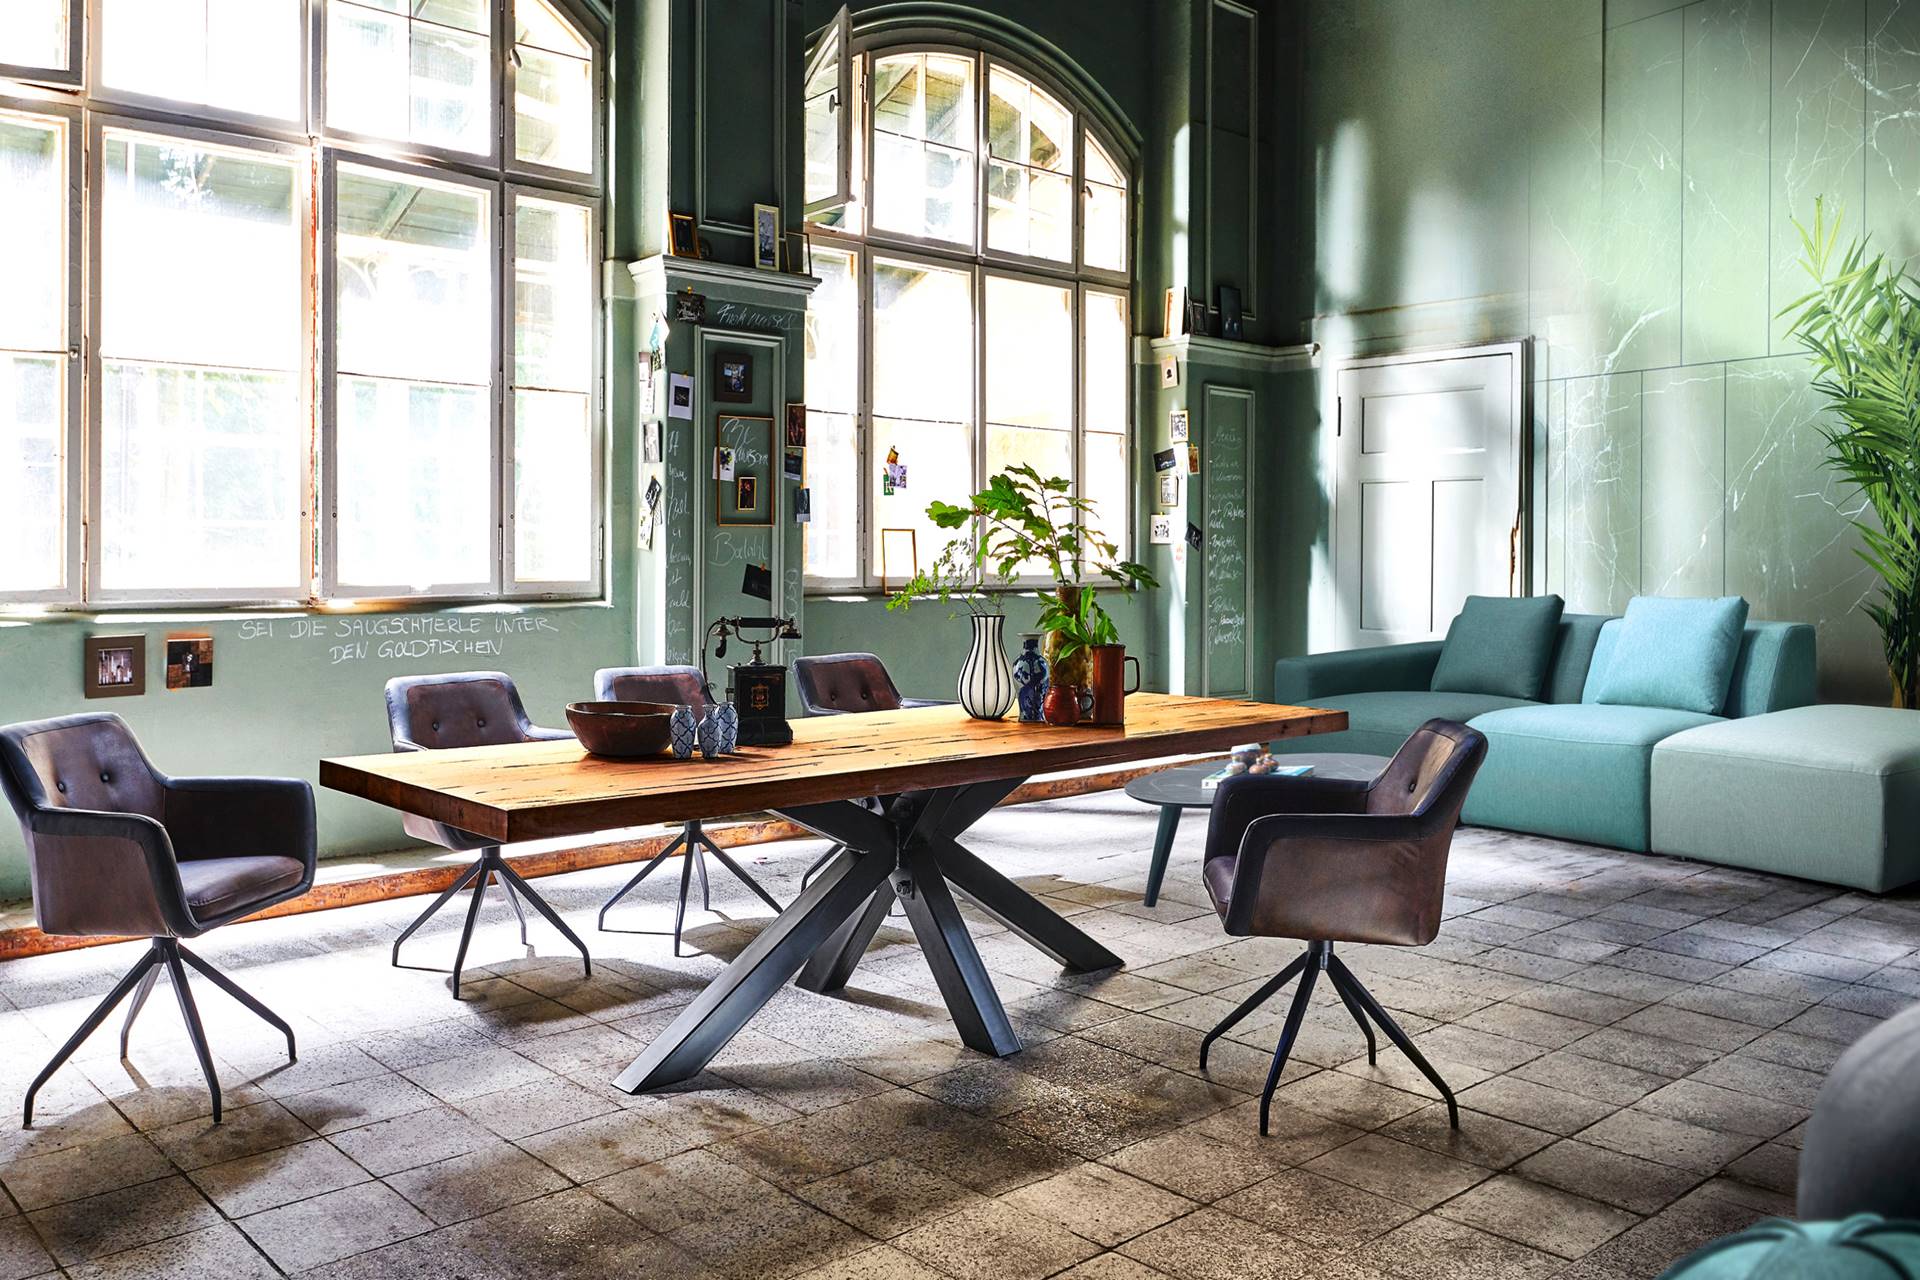 La table chêne rustique et pied métal, au design industriel, présente un piétement original.